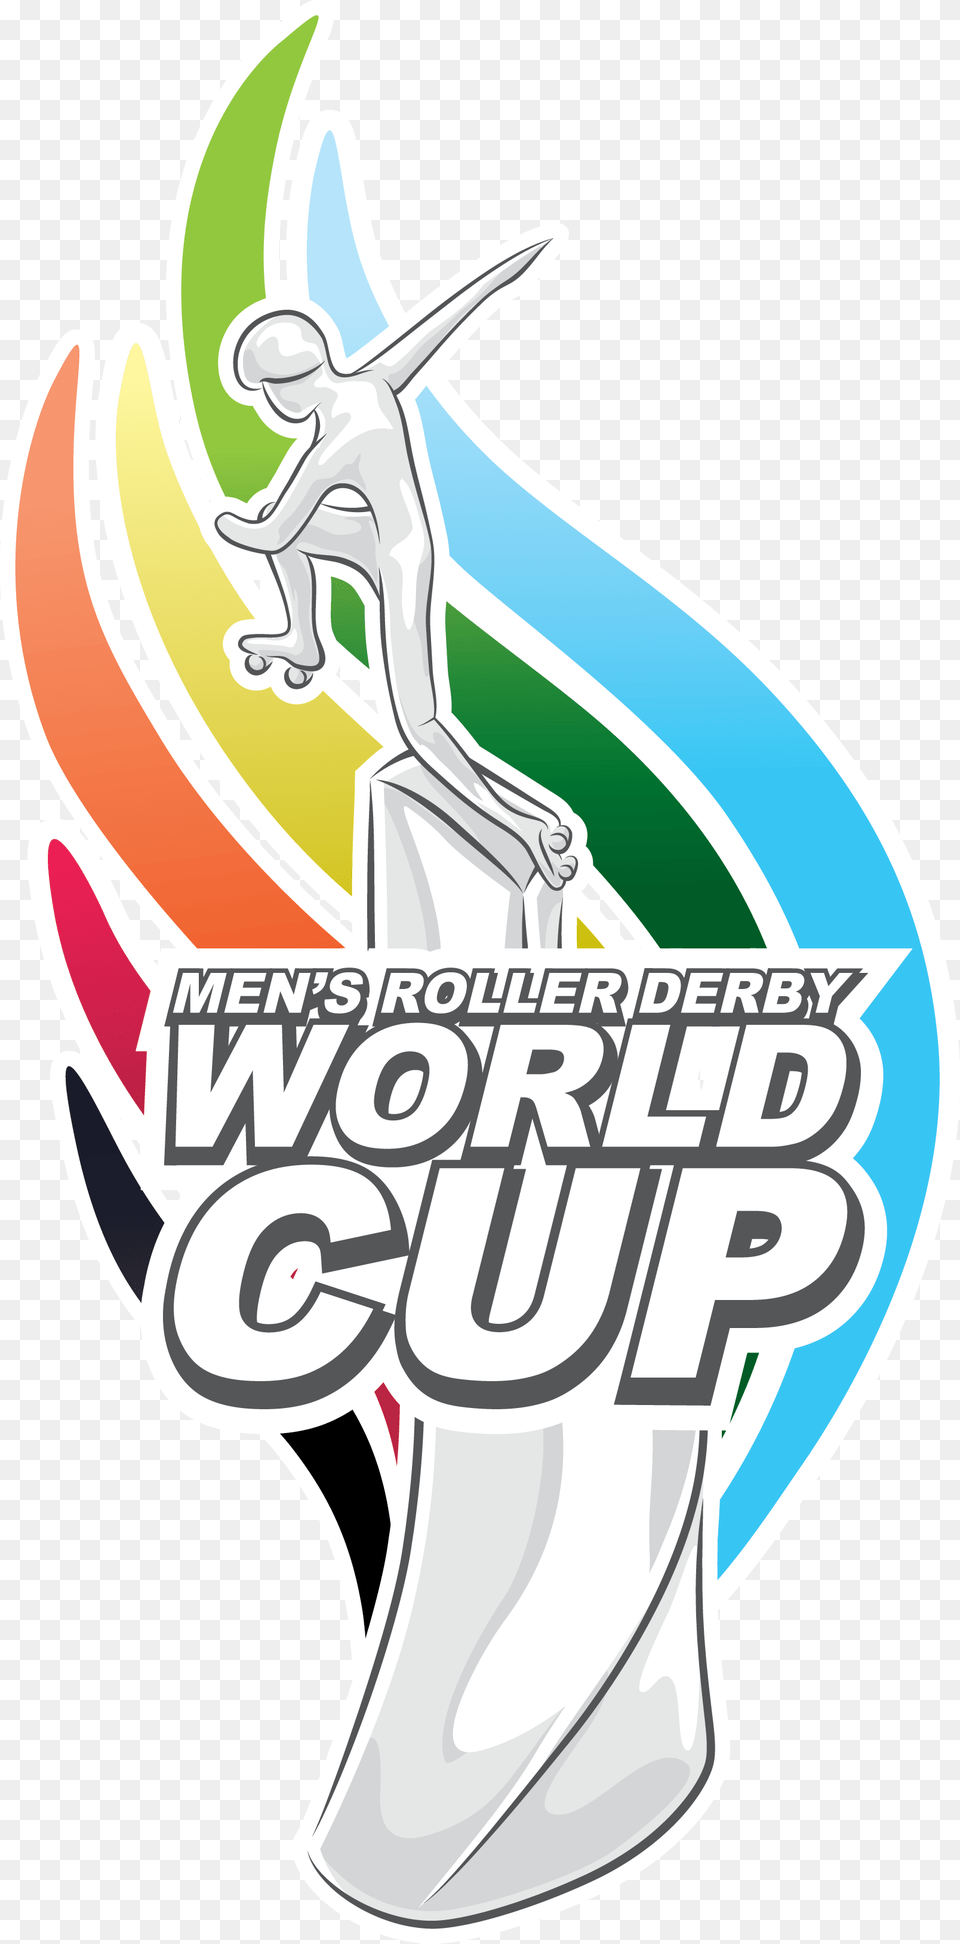 Trophy Logo For The Men S Roller Derby World Cup Men39s Roller Derby World Cup, Book, Comics, Publication, Art Free Png